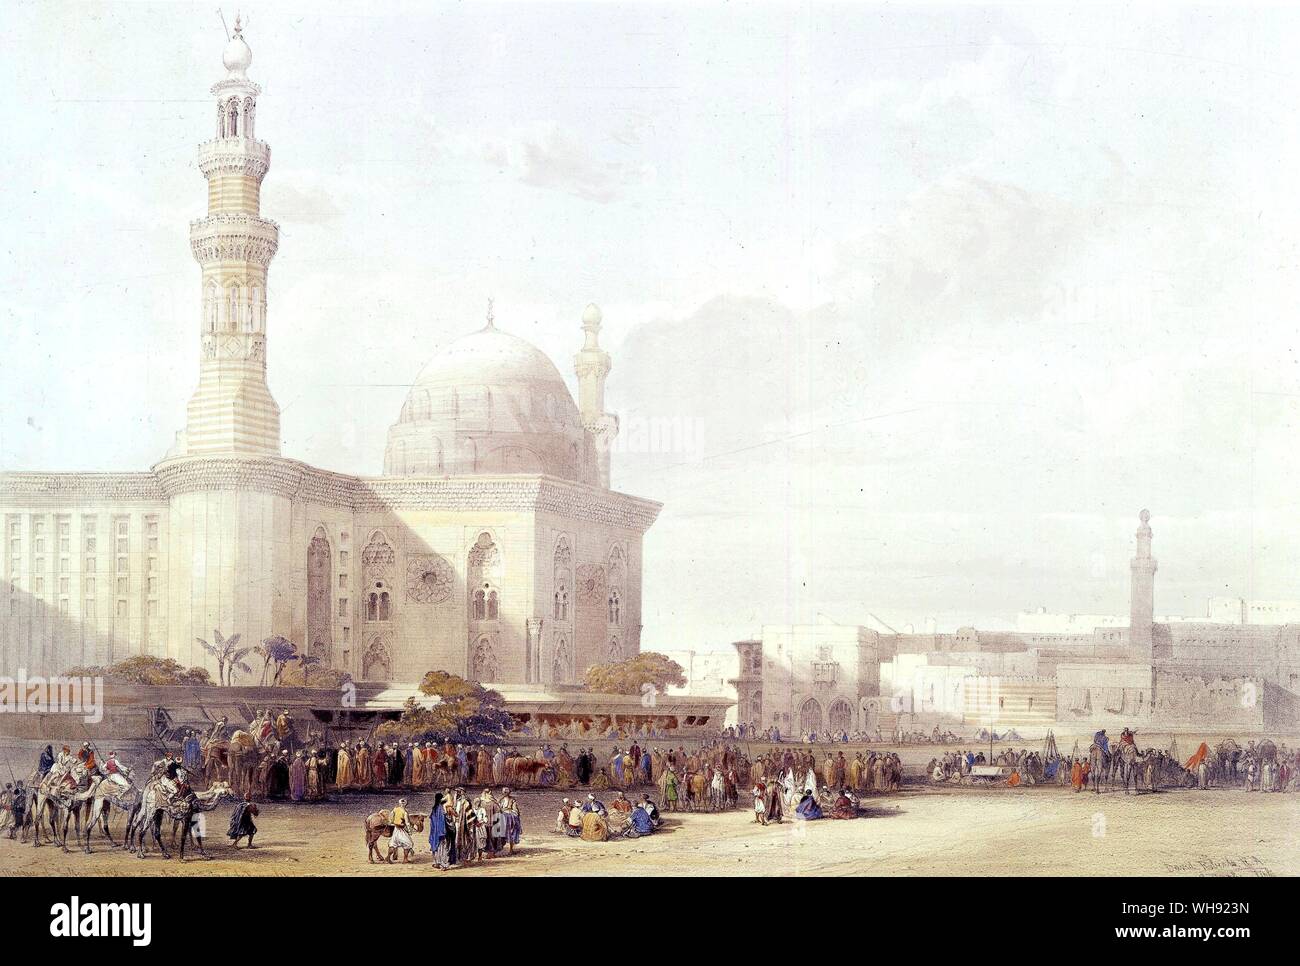 Sultan Hassan Moschee und Eingang der Zitadelle Kairo. von David Roberts. In V&A London. David Roberts (Oktober 24, 1796 - November 25, 1864), schottischer Maler, war an der Stockbridge, Edinburgh geboren. . Stockfoto